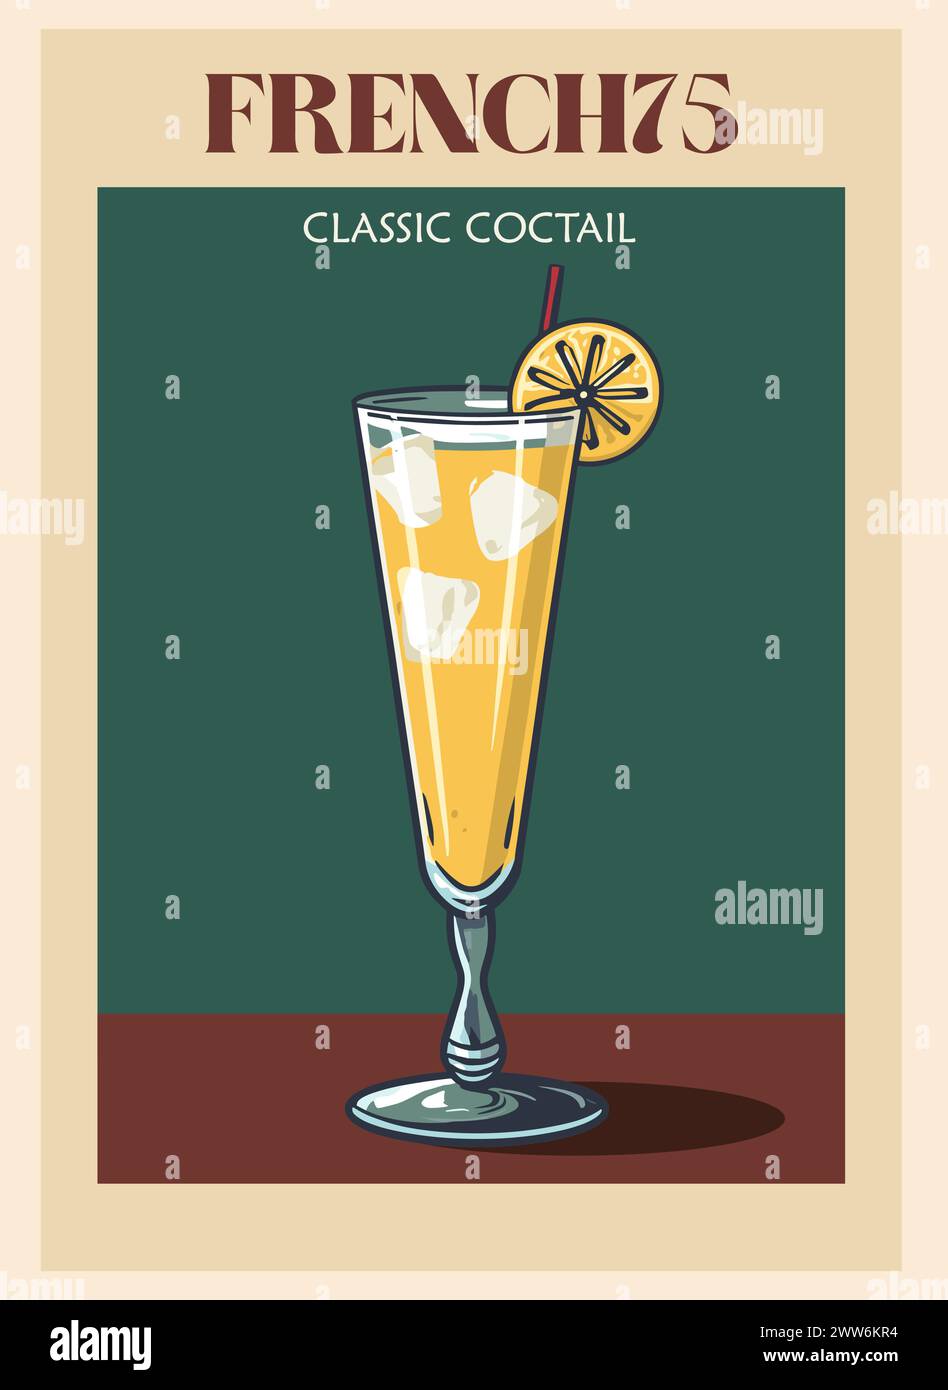 French75 cocktail poster retrò stampe vettoriali. Illustrazione Vettoriale